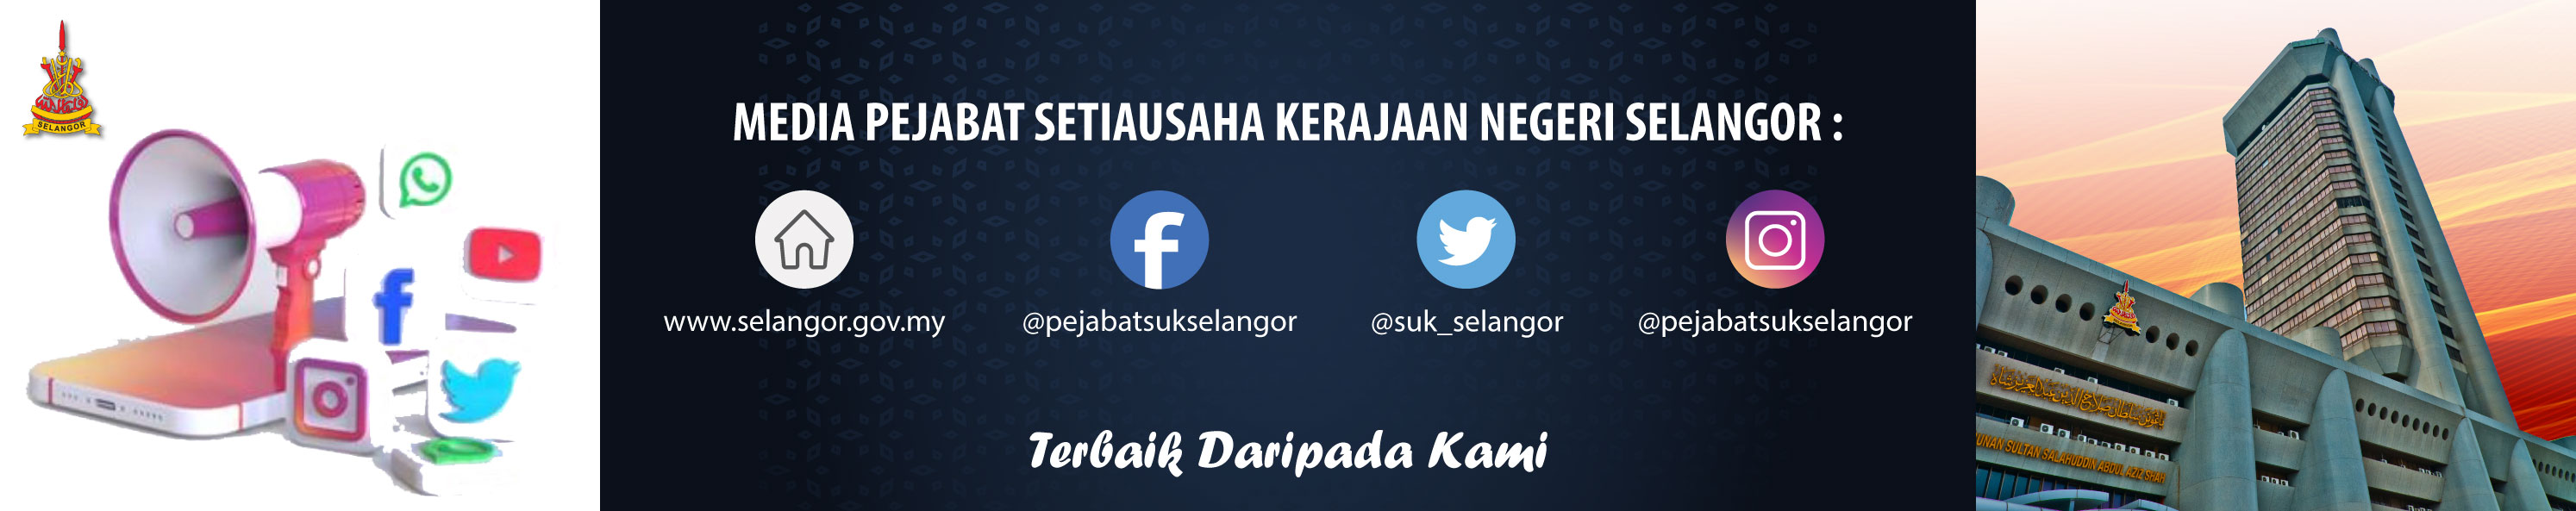 Media Pejabat Setiausaha Kerajaan Negeri Selangor